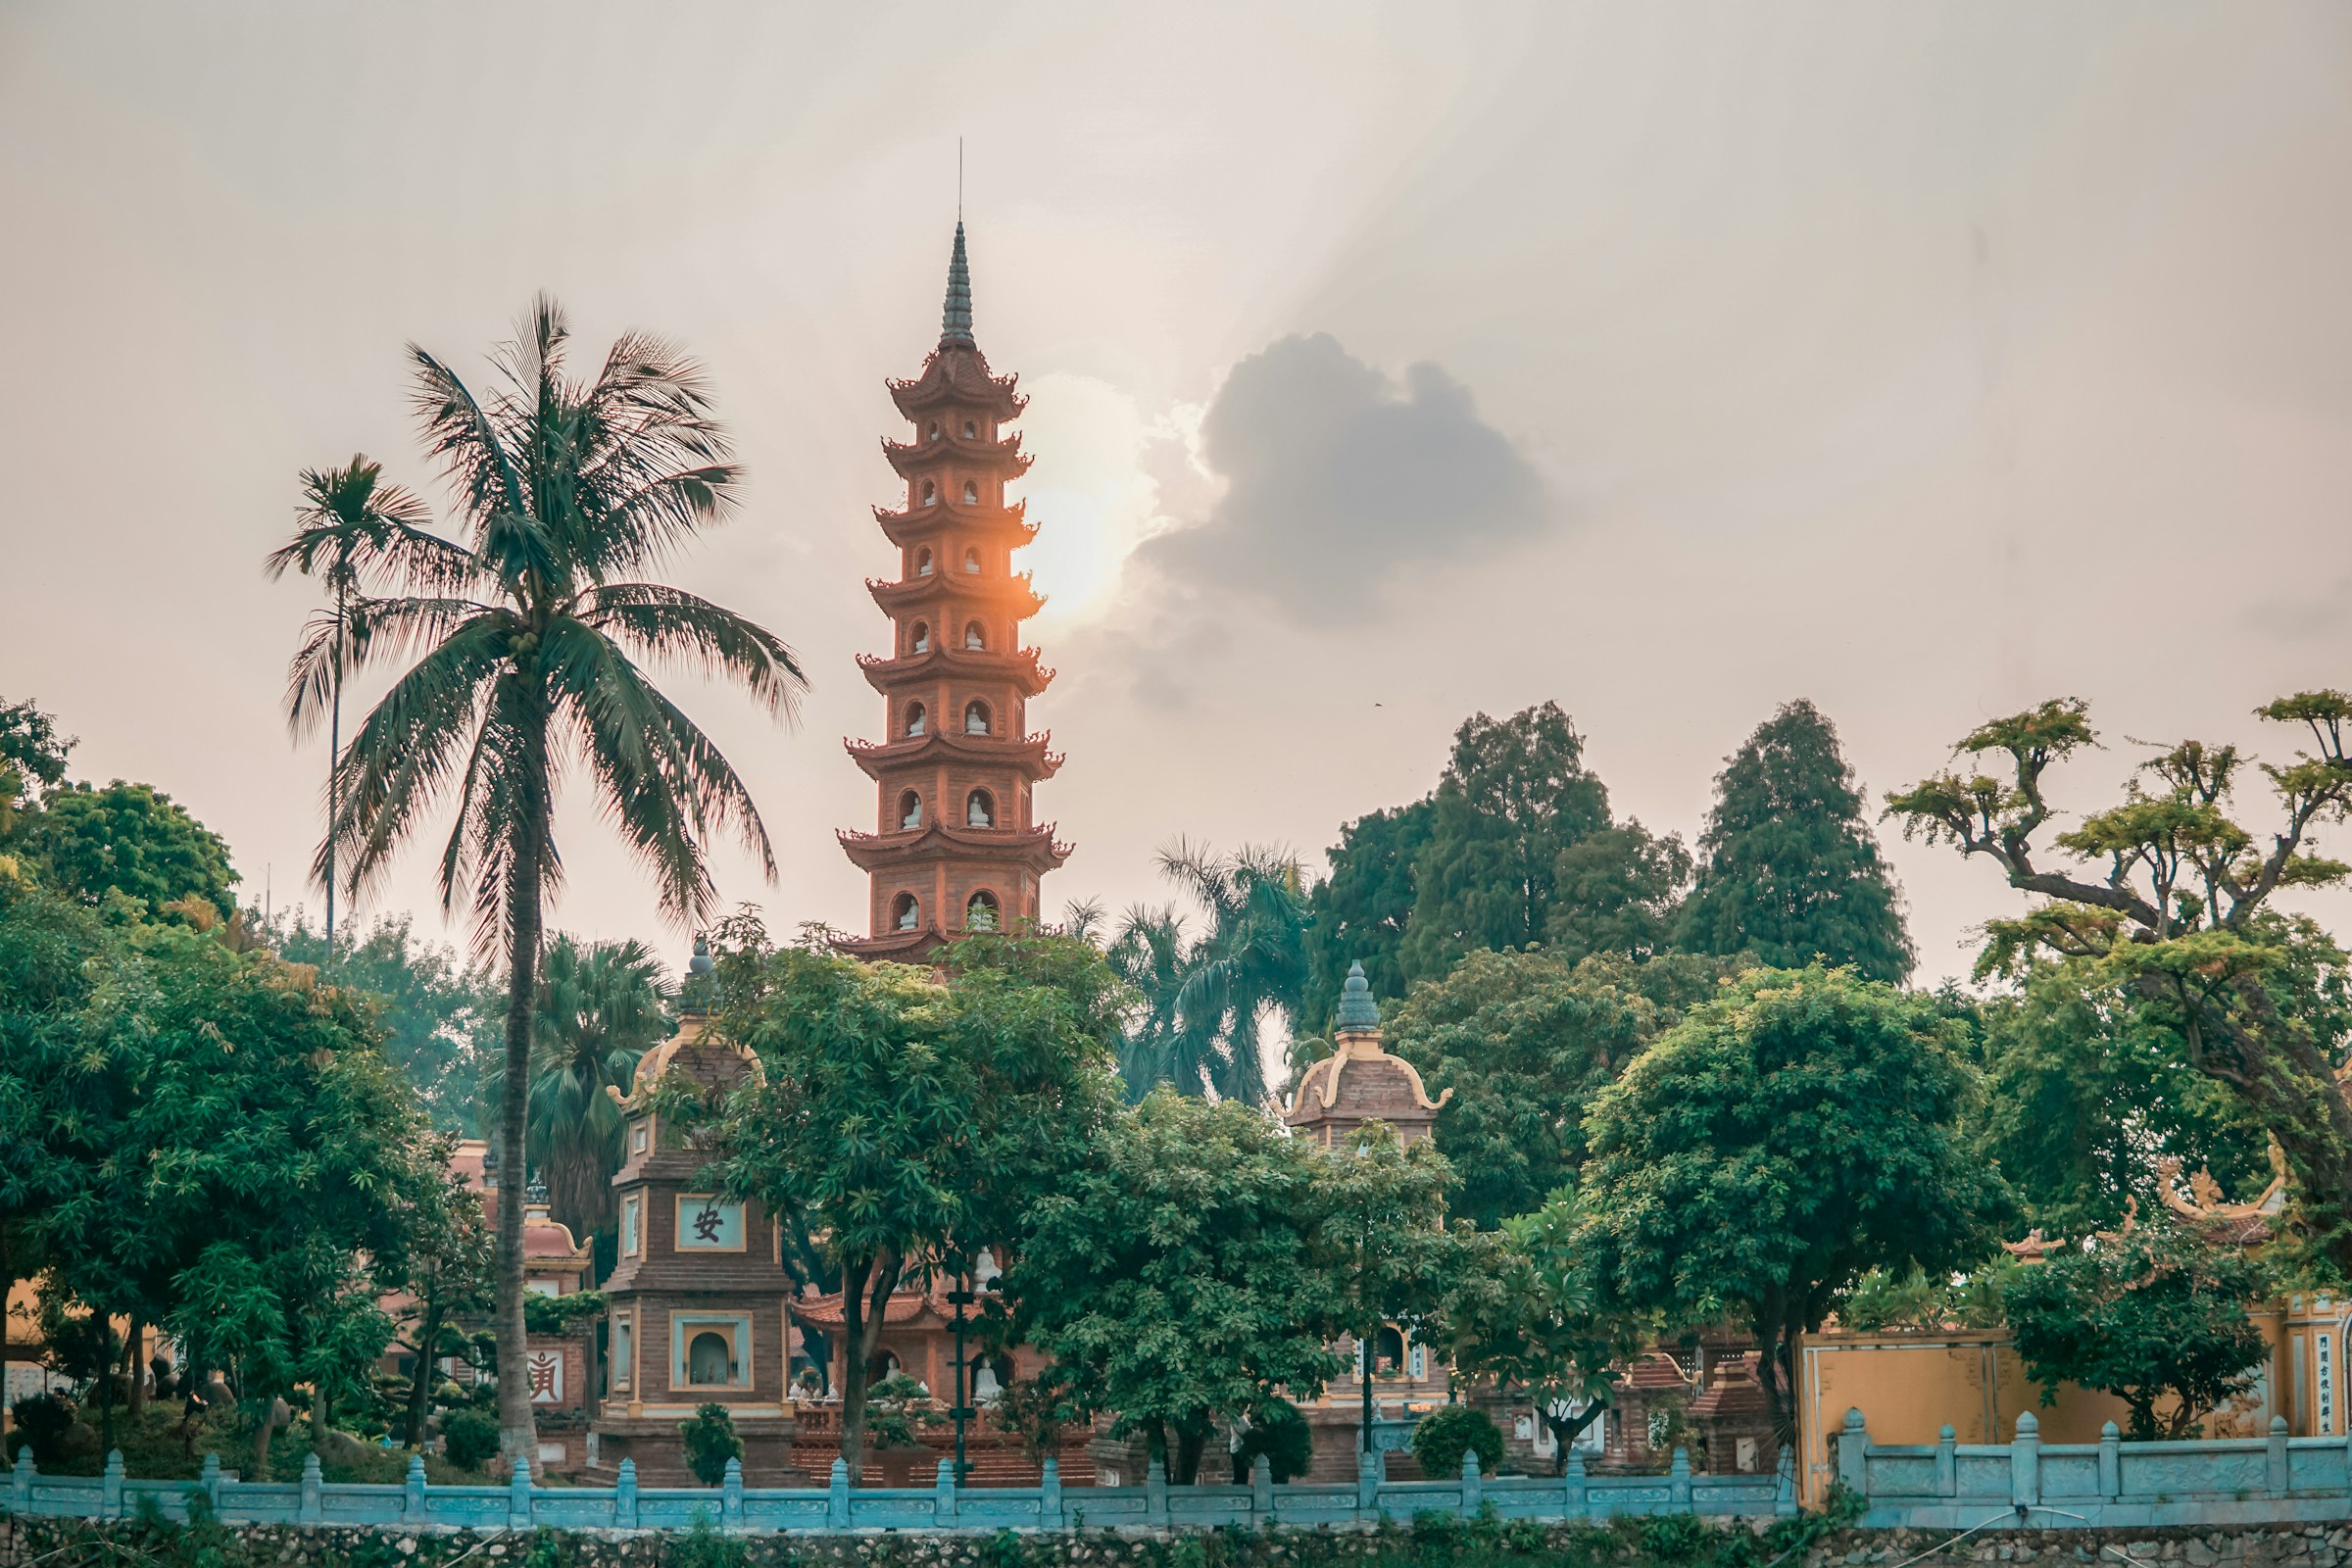 Traditionellt asiatiskt pagodtorn i en frodig trädgård med palmer vid solnedgång i Hanoi.